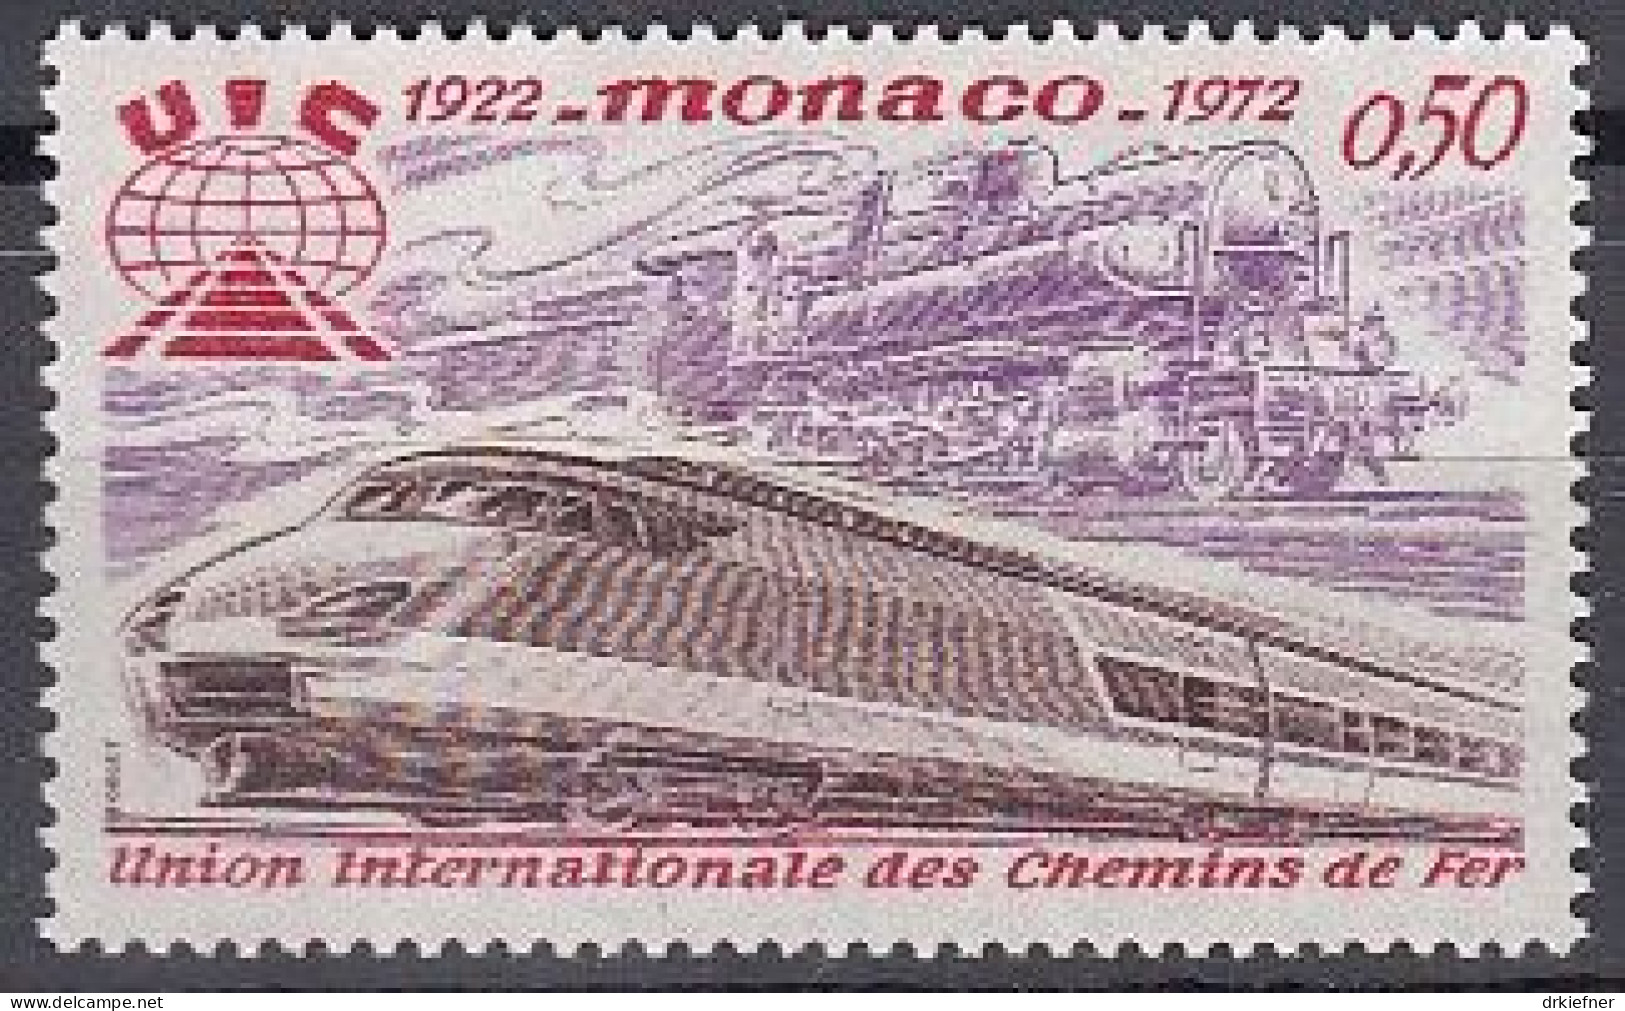 MONACO  1034, Postfrisch **, Eisenbahn-Verband, Dampflok, TGV, 1972 - Nuovi